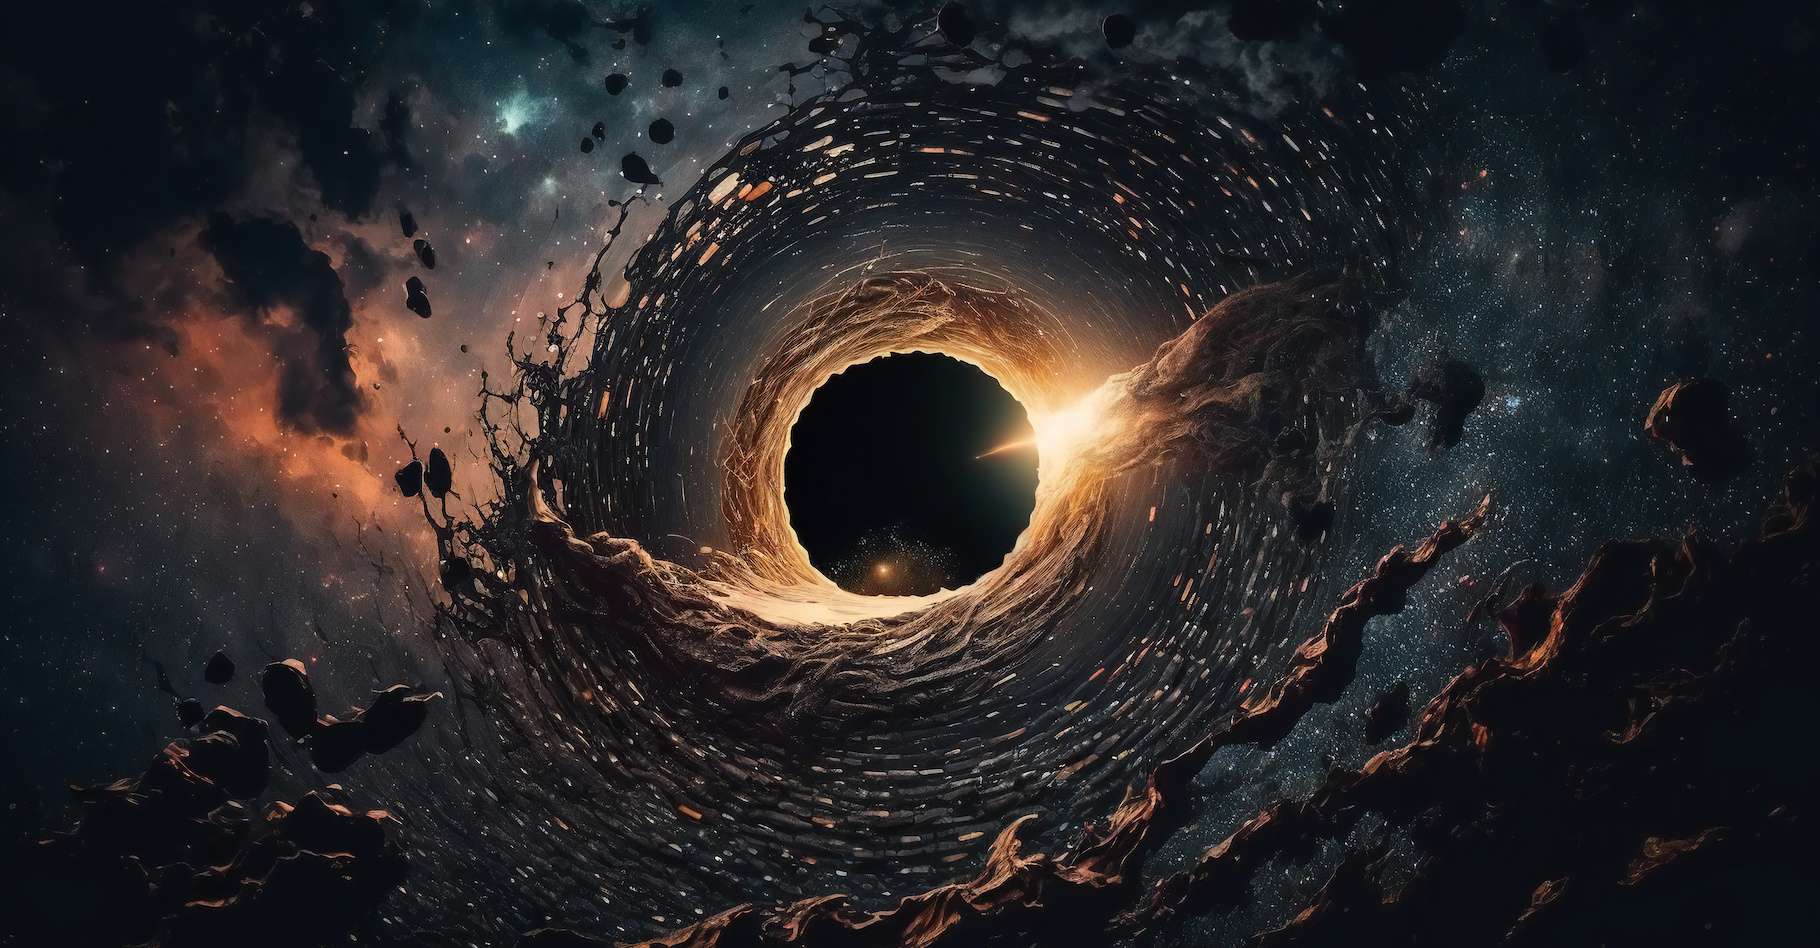 Het verschijnen van gigantische zwarte gaten zo vroeg in de geschiedenis van het universum is interessant voor astronomen